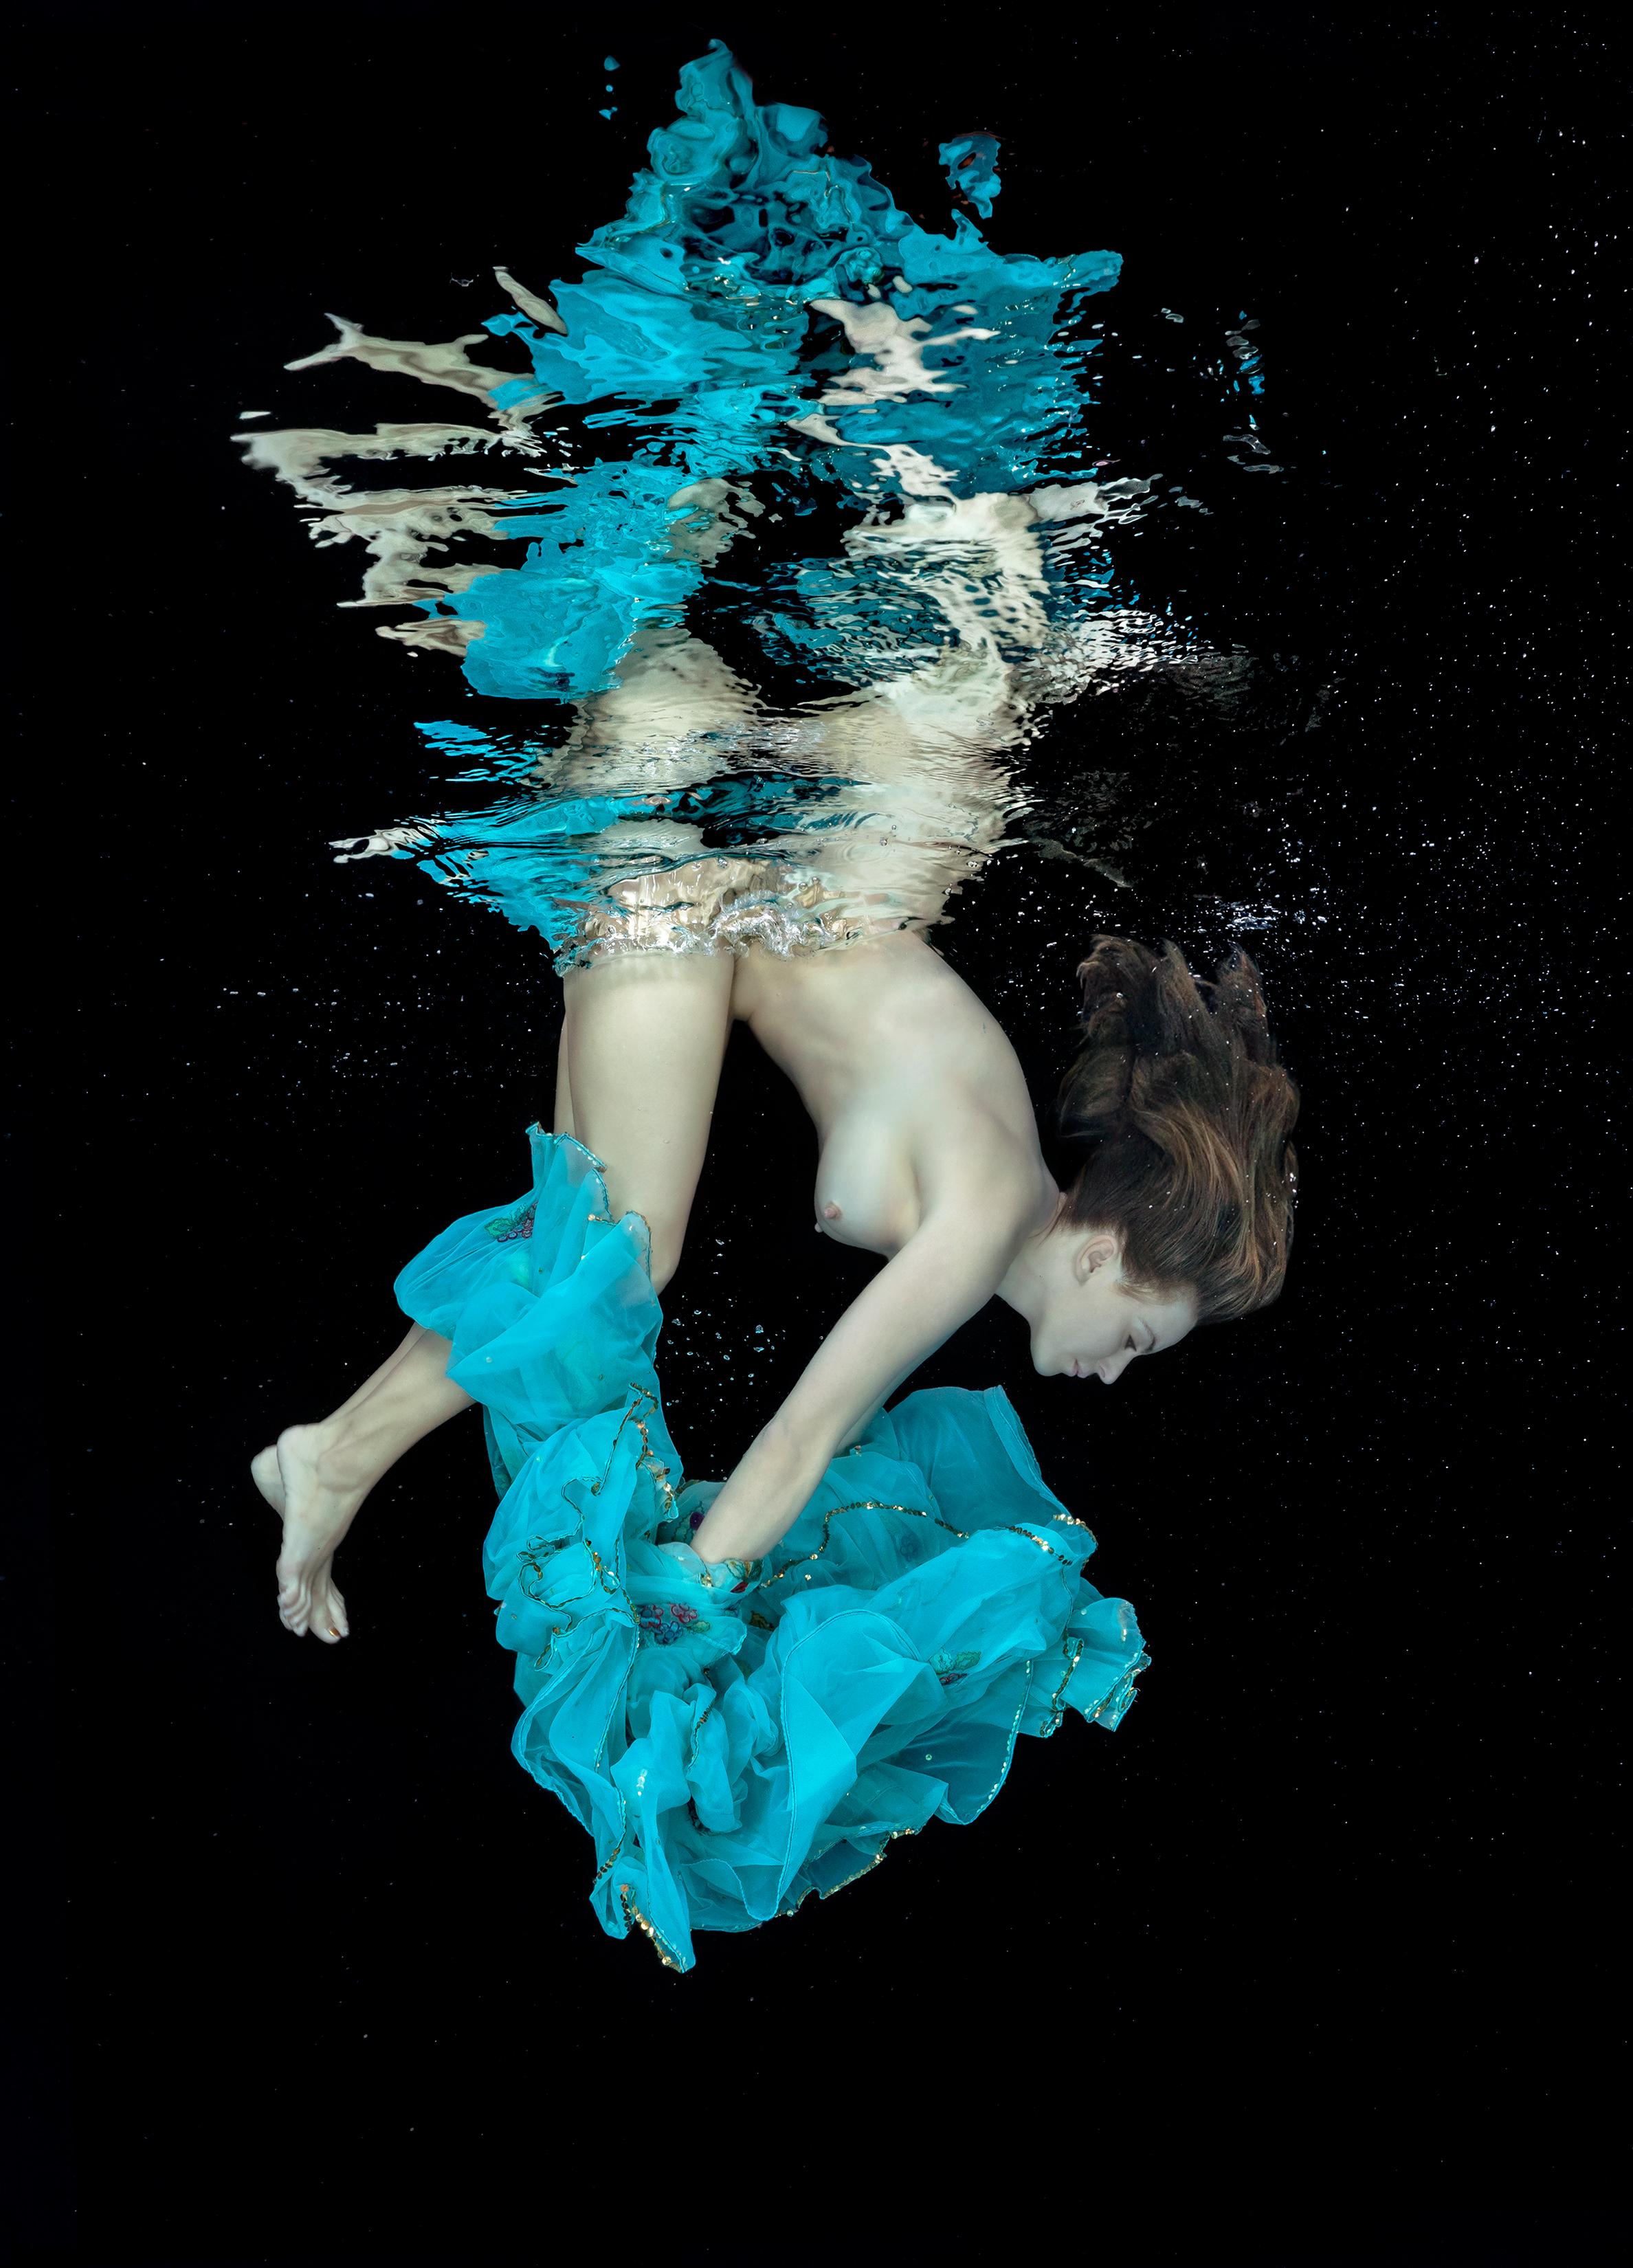 Porcelaine et Тurquoise - photographie de nu sous-marin - pigment d'archives 35x26"